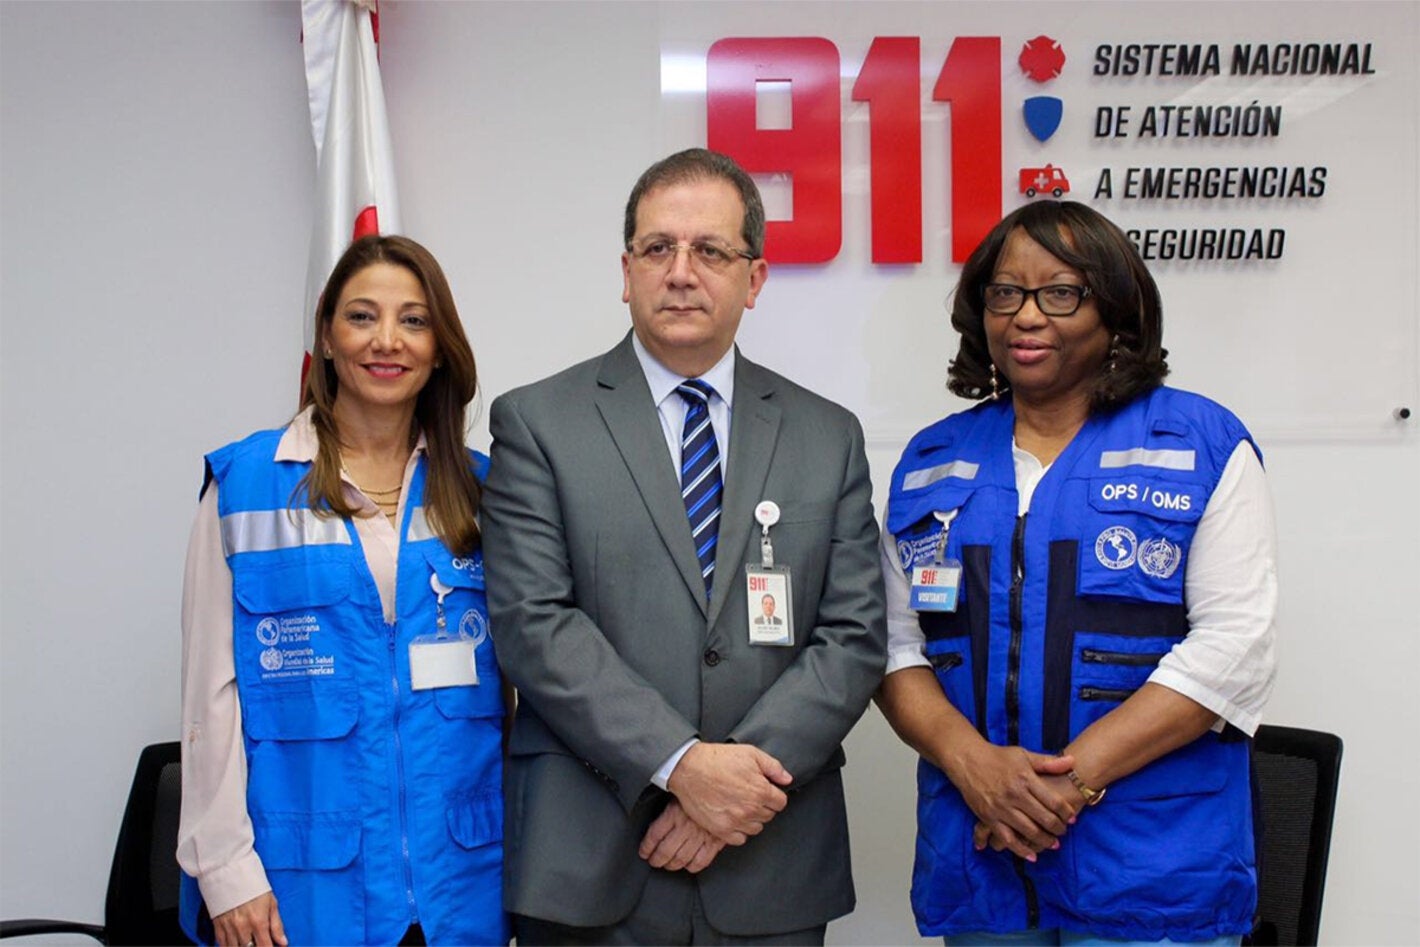 Dra. Etienne visita instalaciones del Sistema Nacional de Atención a Emergencias y Seguridad Ciudadana 911 en Santo Domingo.